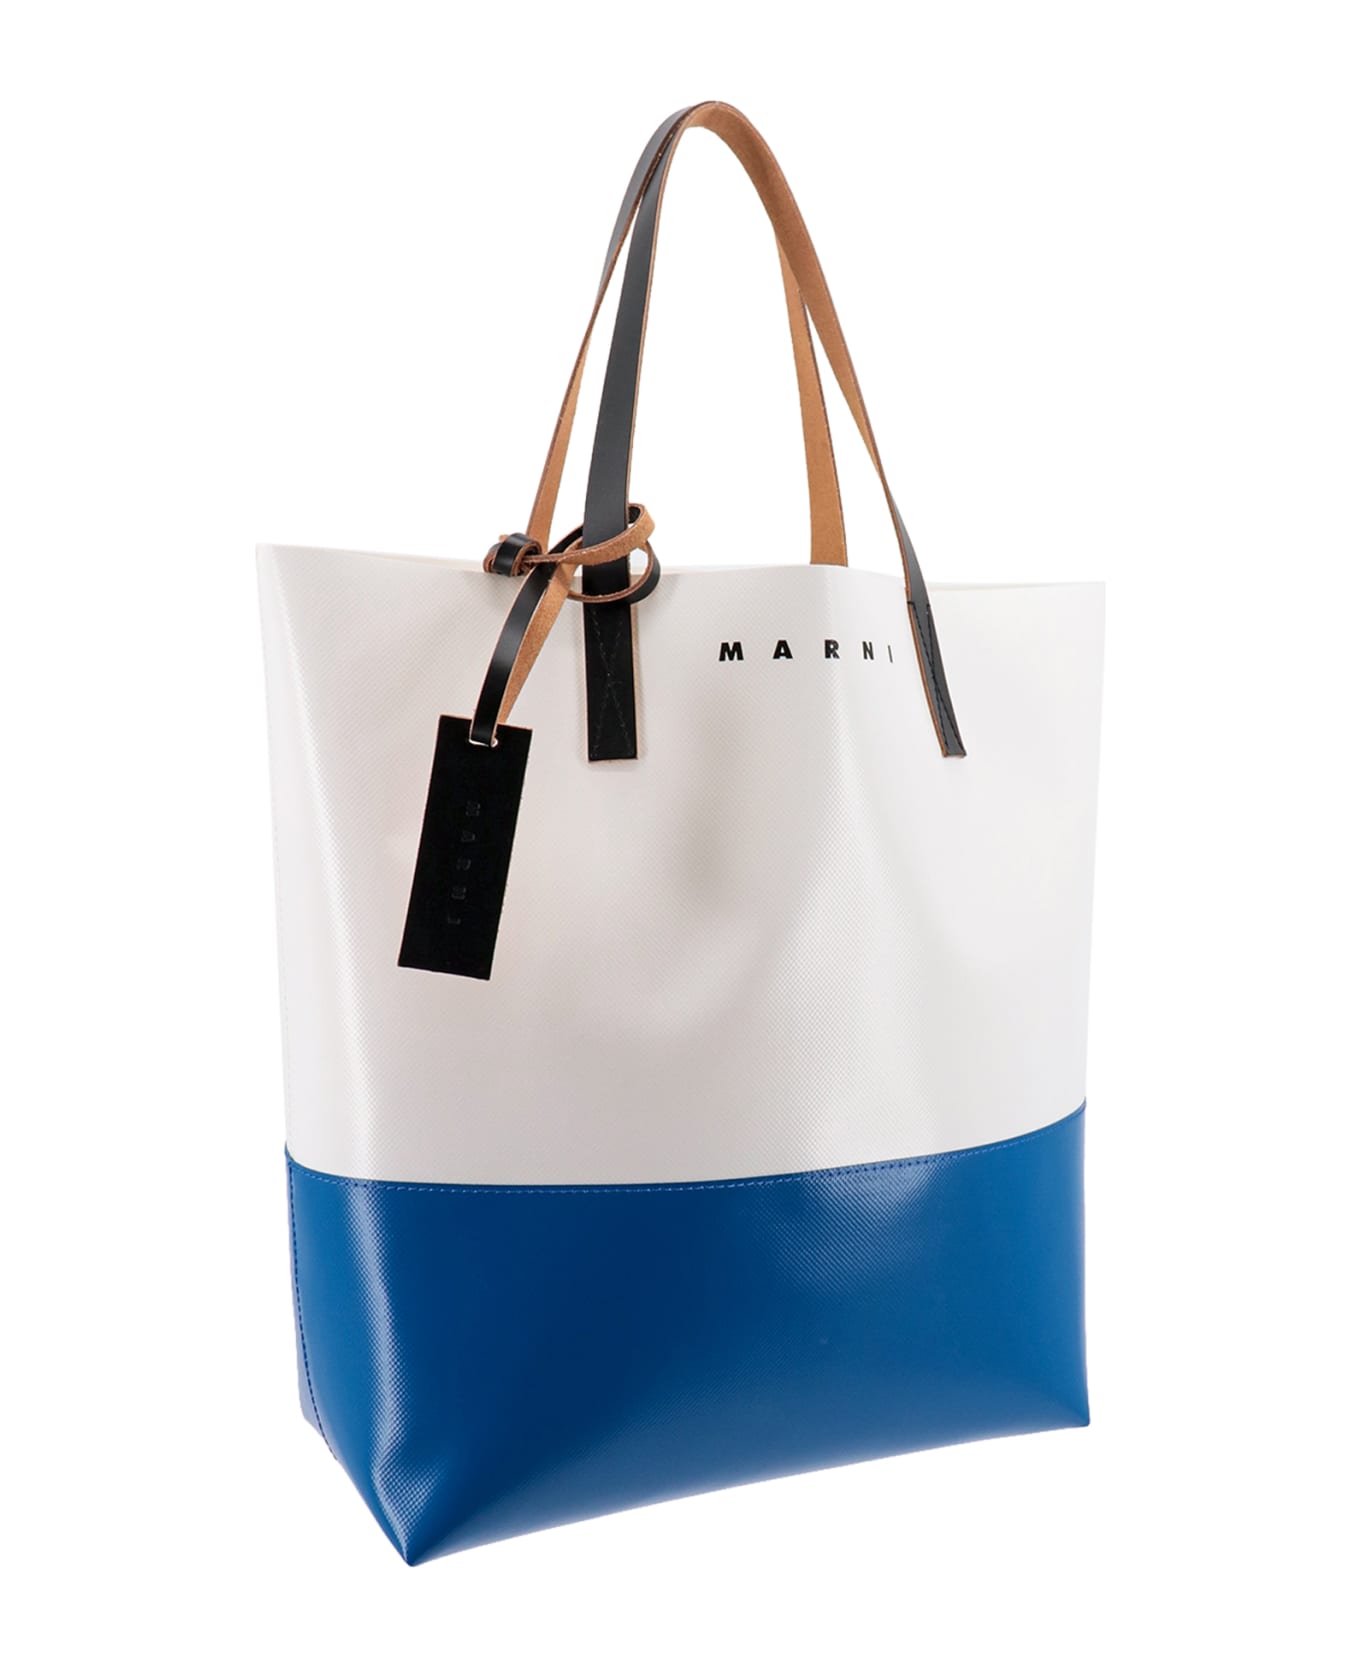 Marni Shoulder Bag - WHITE/BLUE